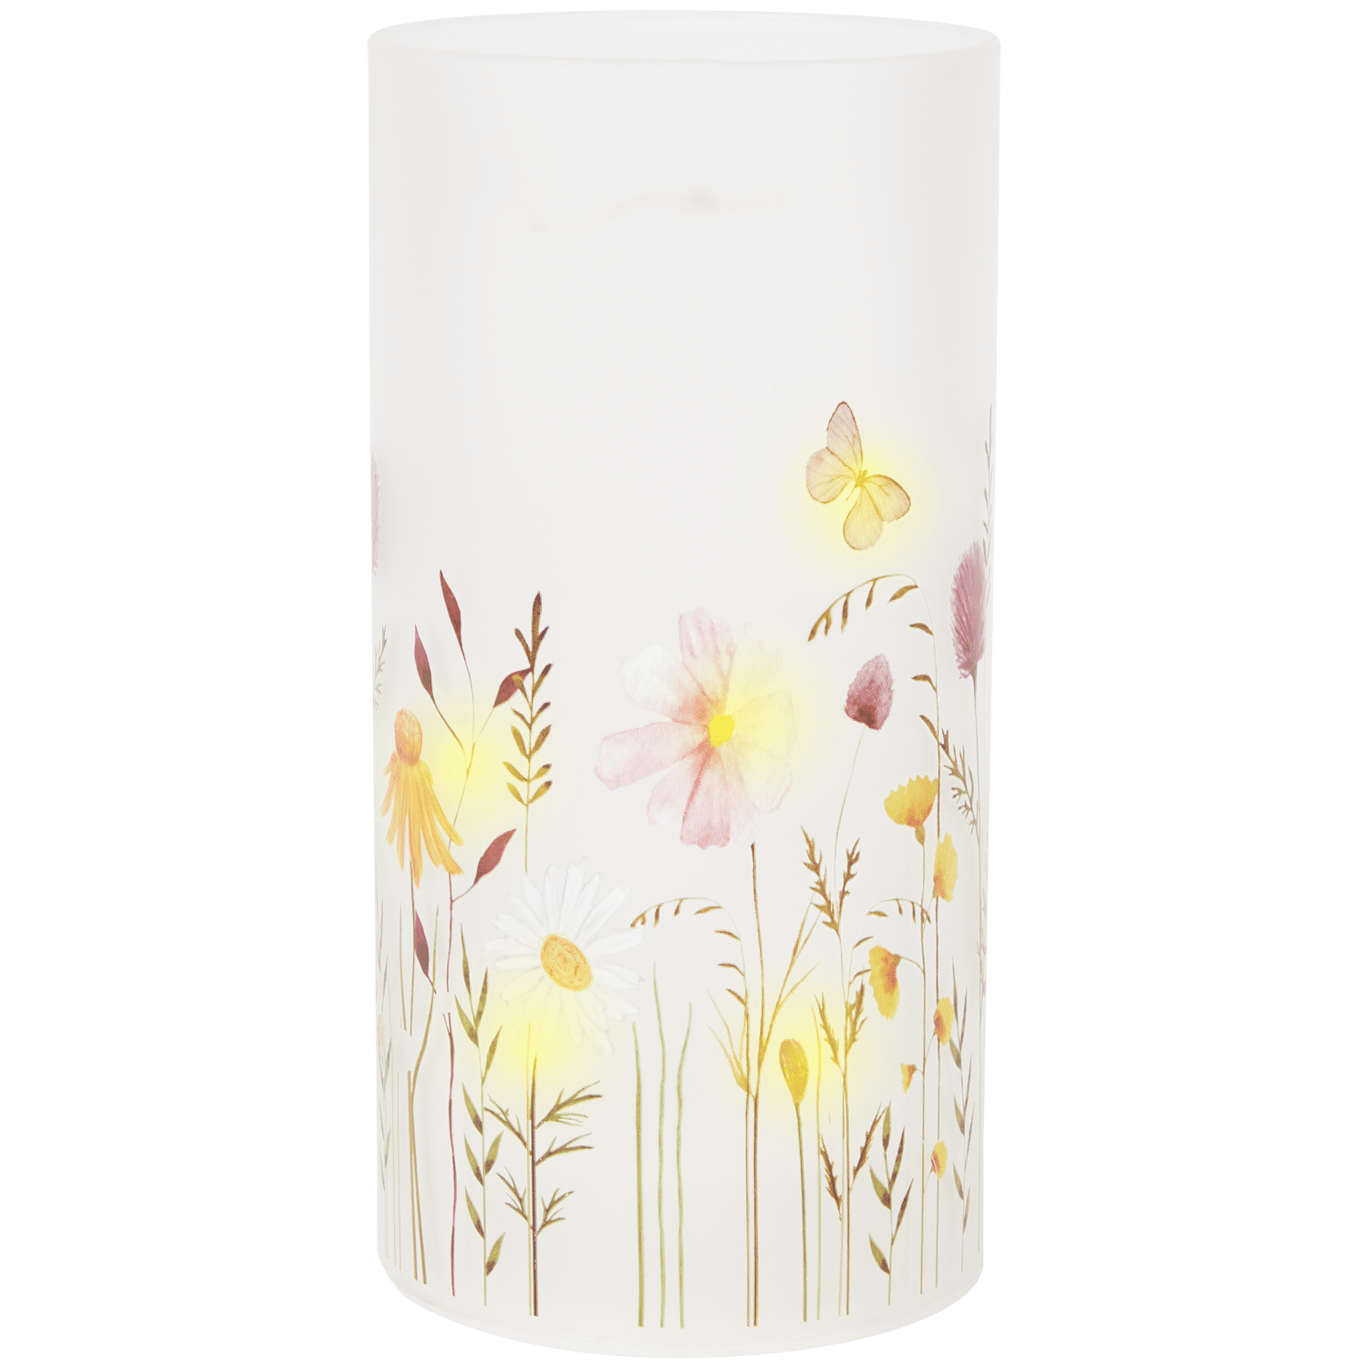 Lampe avec imprimé floral